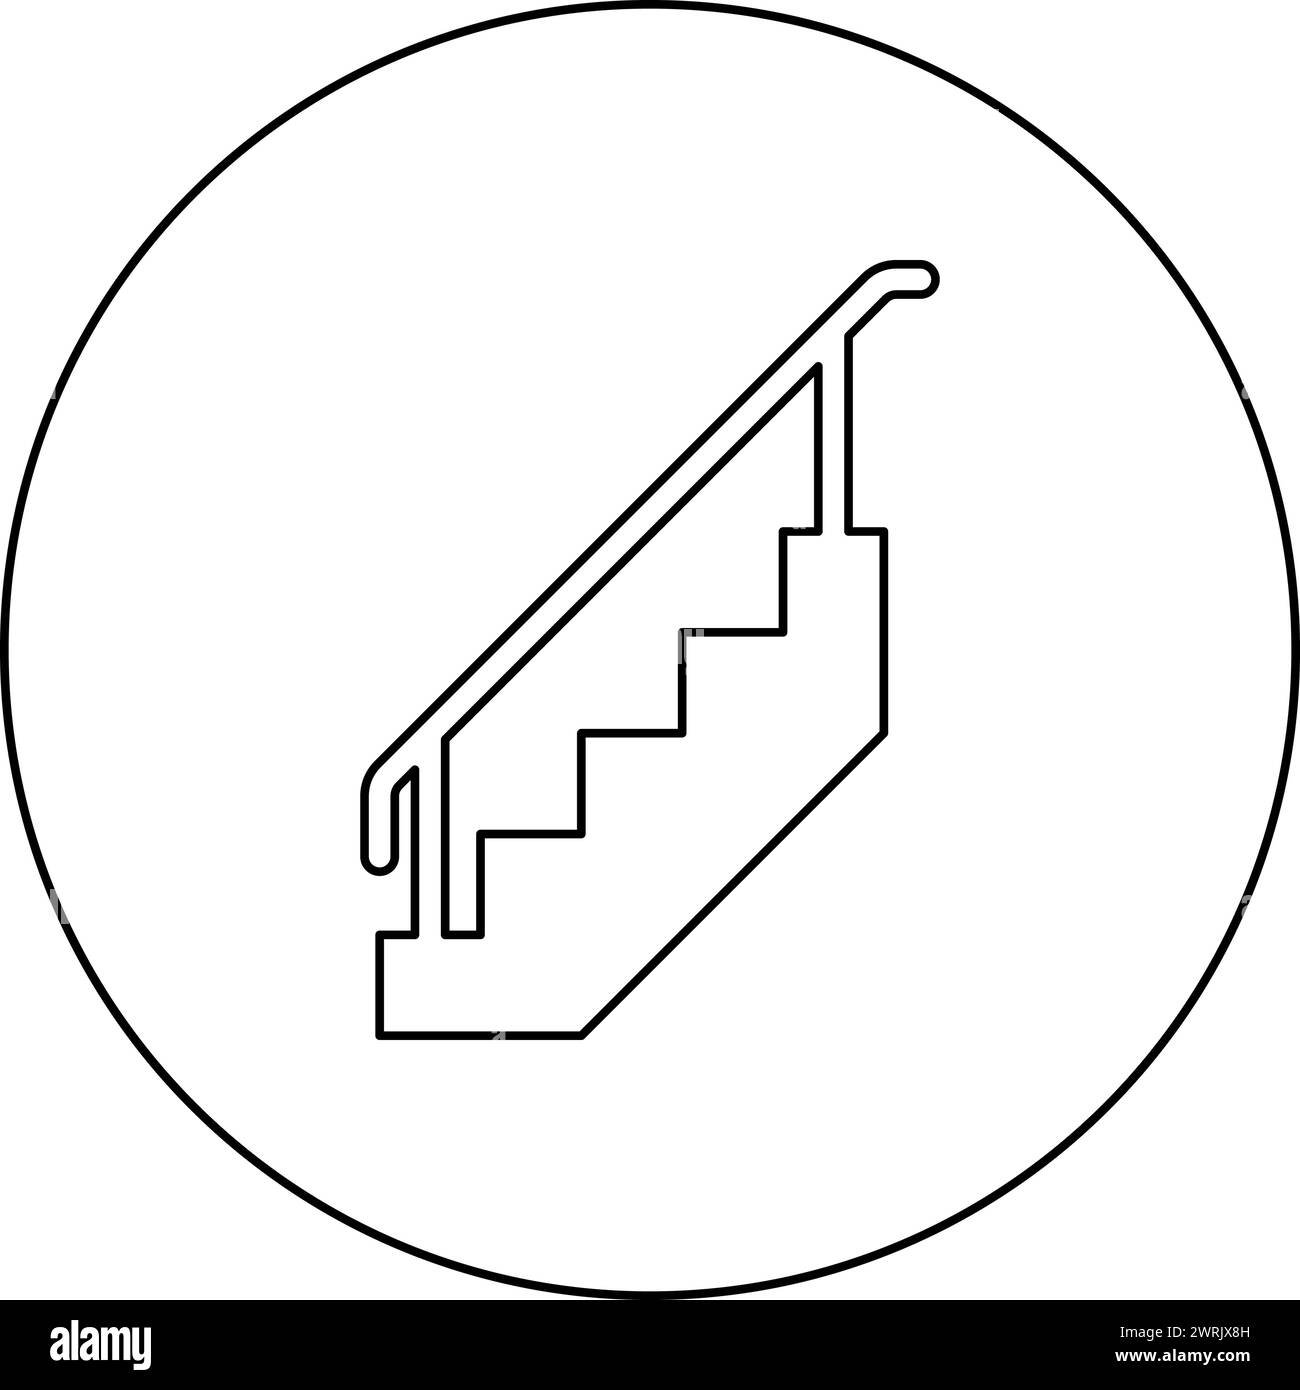 Treppe mit Geländer Treppe mit Handlauf Leiterzaun Treppenhaus Symbol im Kreis Runde schwarze Farbe Vektor Illustration Bild Umriss Kontur Linie Stock Vektor